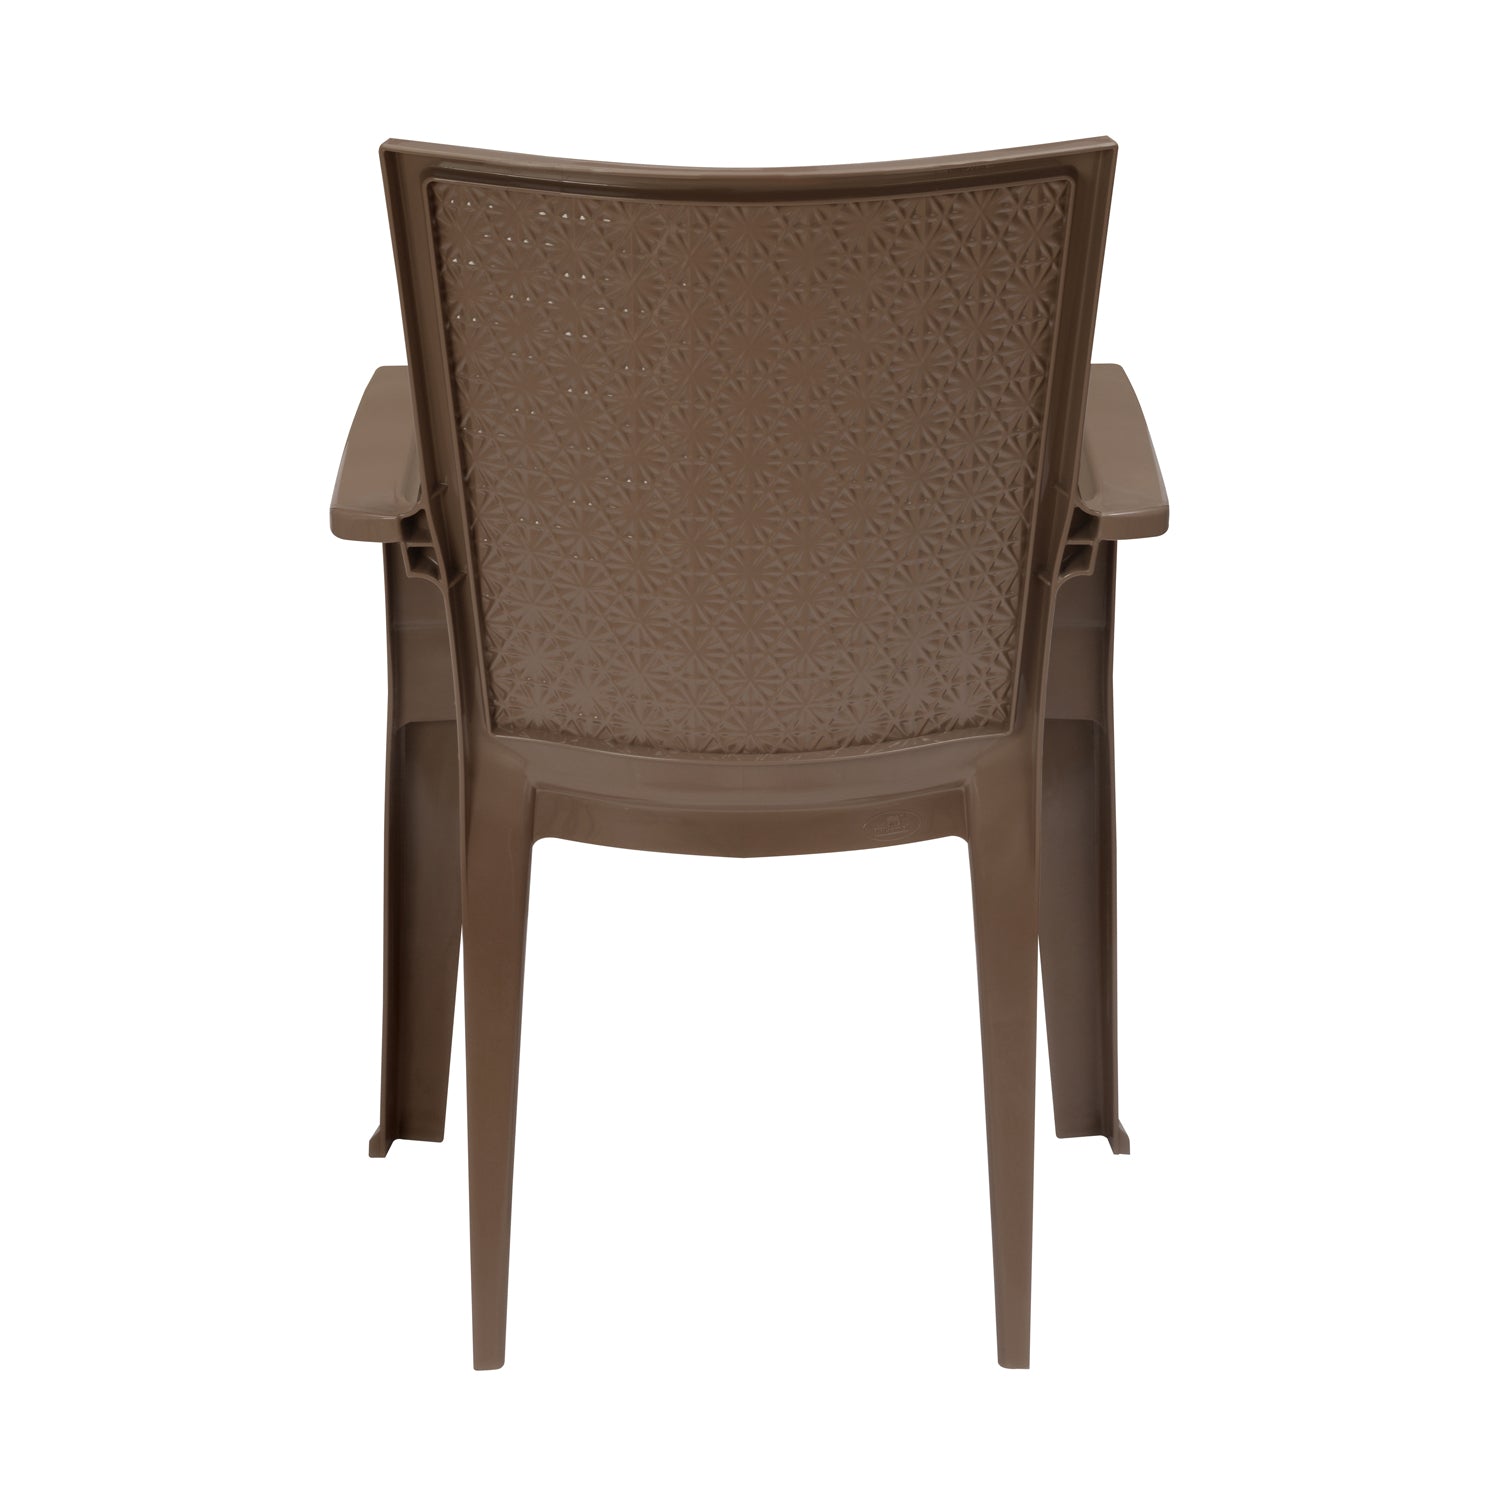 13 Dining Nilkamal chair trivandrum for Bedroom